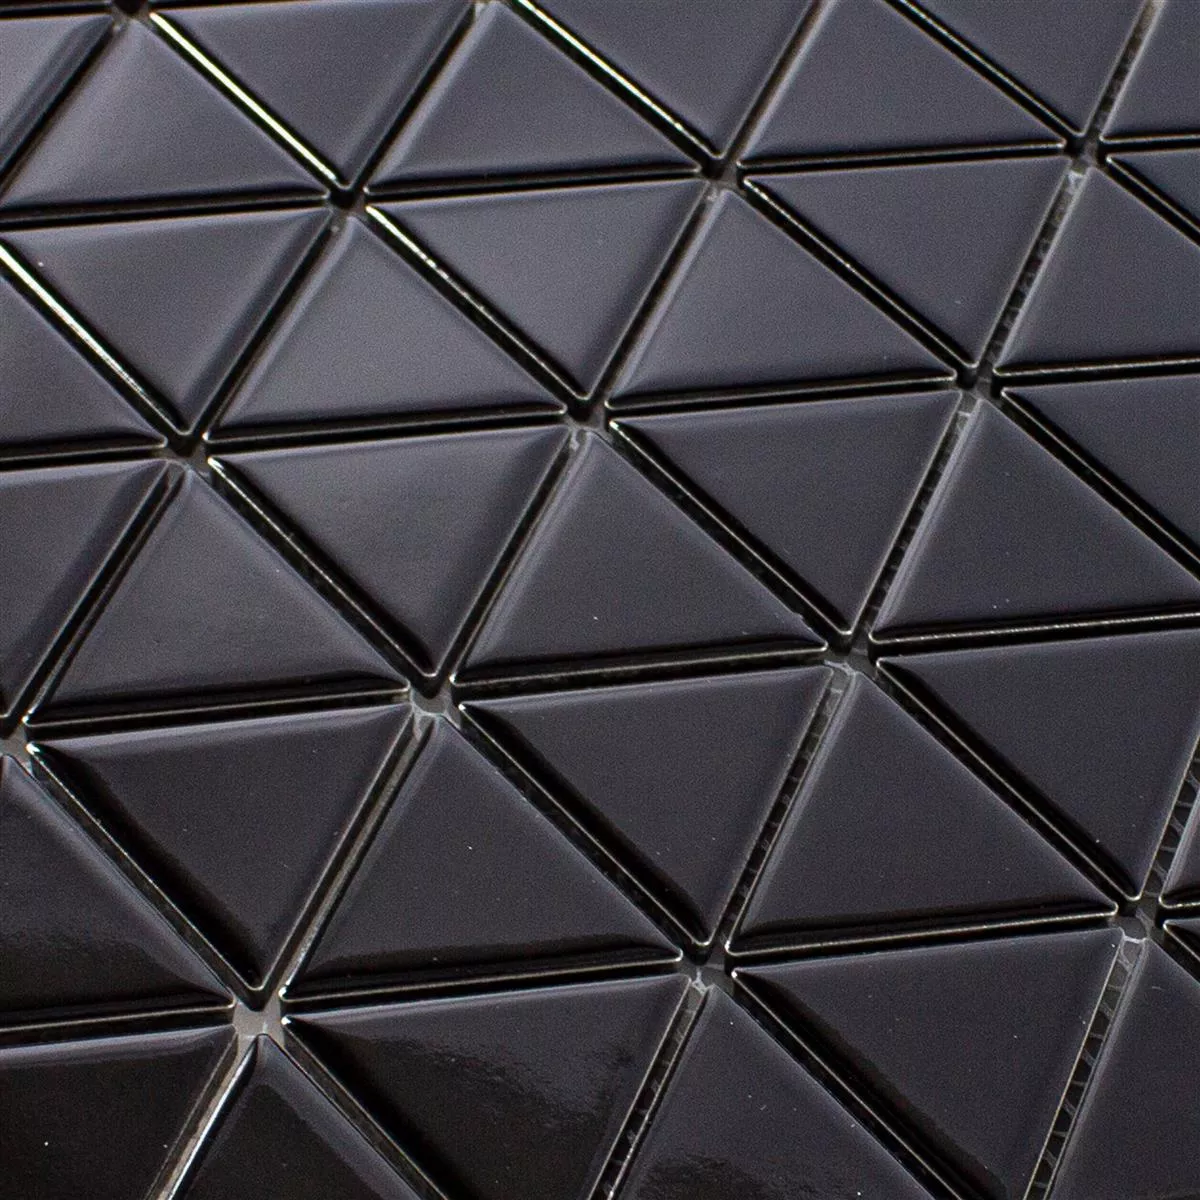 Cerámica Azulejos De Mosaico Arvada Triángulo Negro Brillante